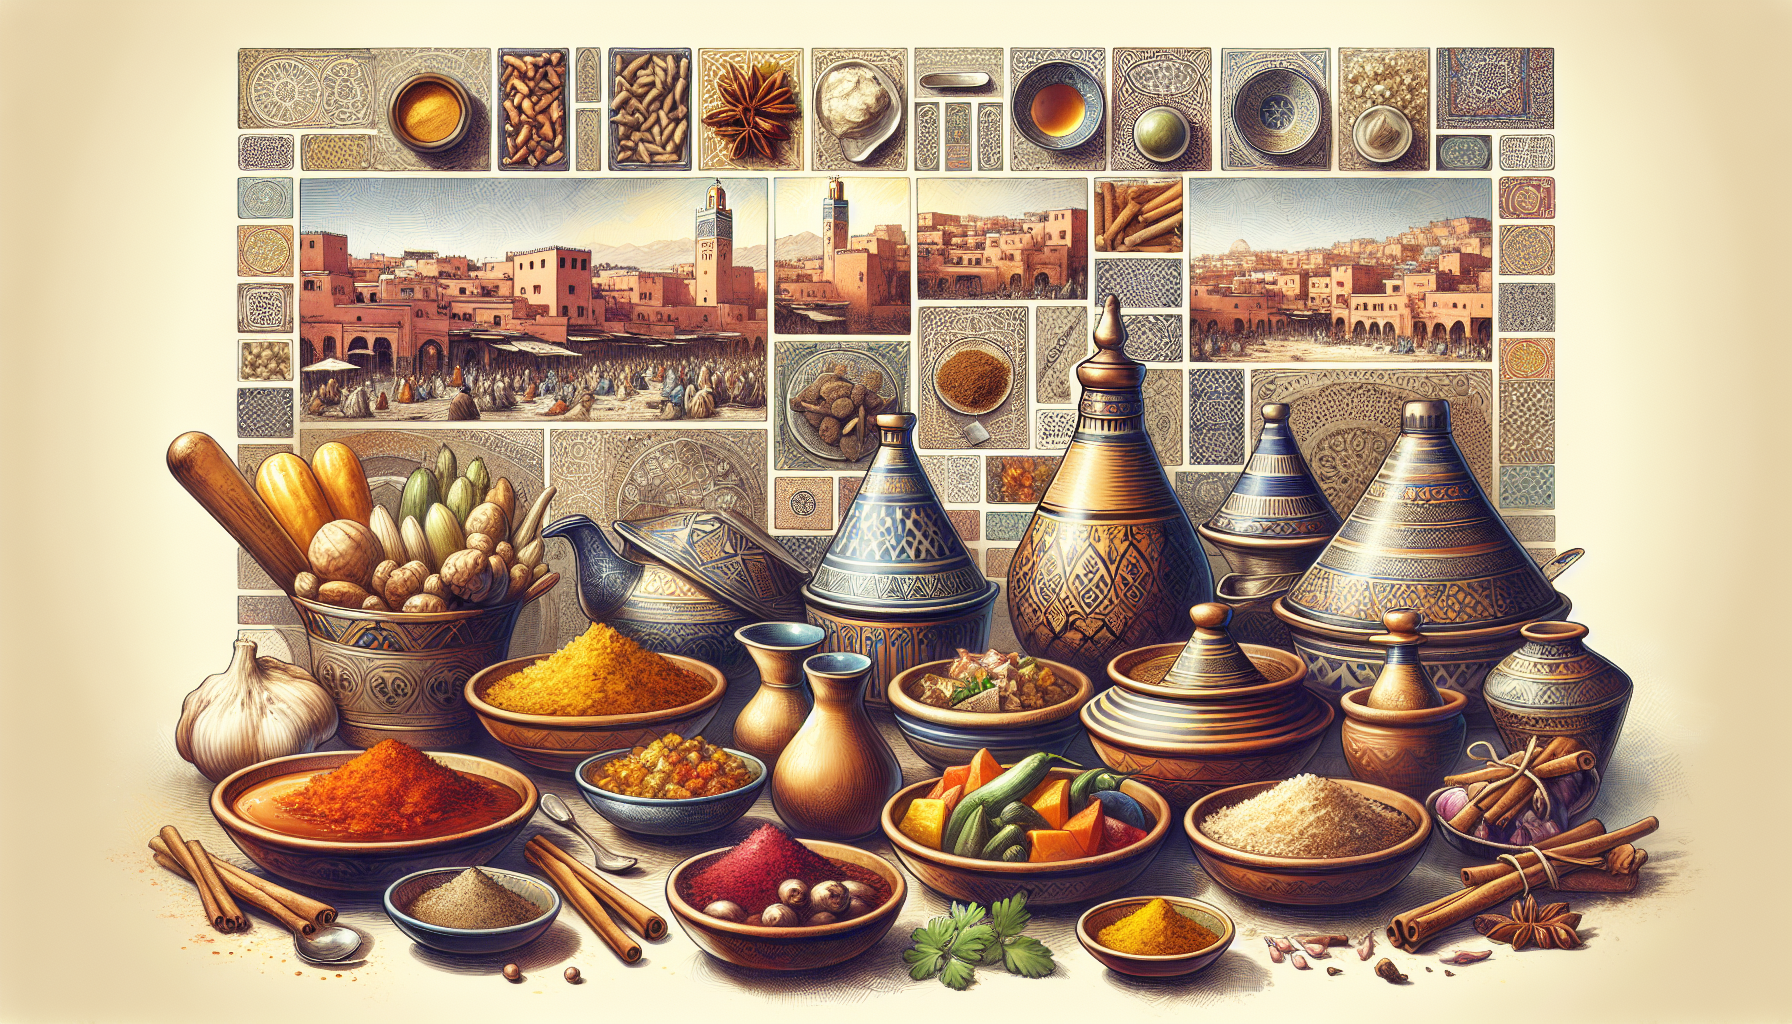 découvrez les secrets de la cuisine marocaine à marrakech, entre traditions culinaires et saveurs exotiques, pour une expérience gustative inoubliable.